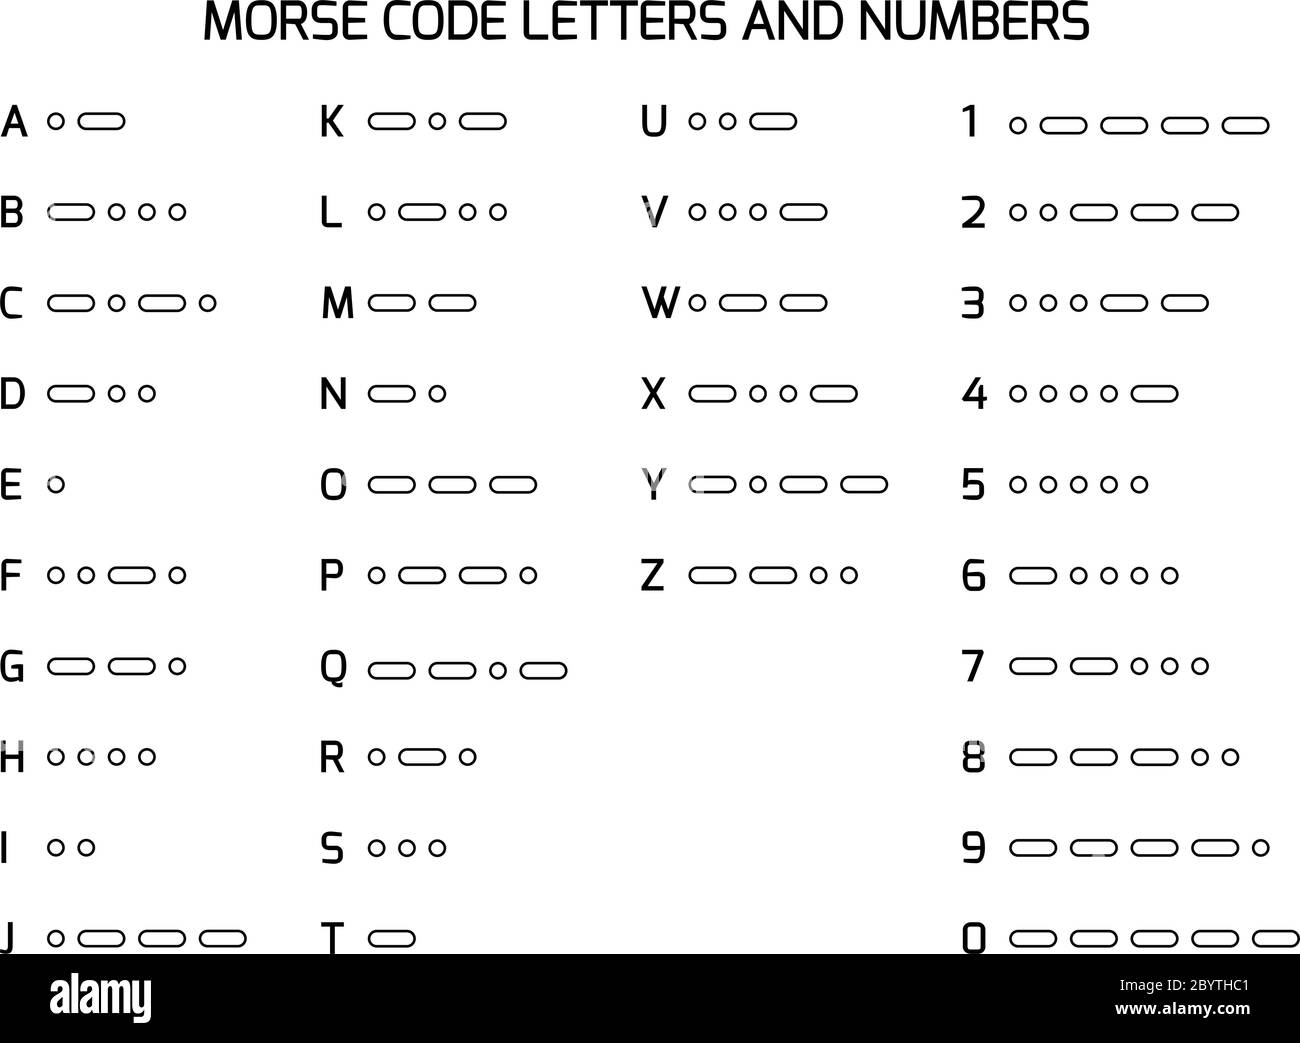 Code international Morse Alphabet. Jeu de lettres et de chiffres codés en  points et tirets. Utilisé pour la communication radio ou lumineuse.  Illustration vectorielle Image Vectorielle Stock - Alamy